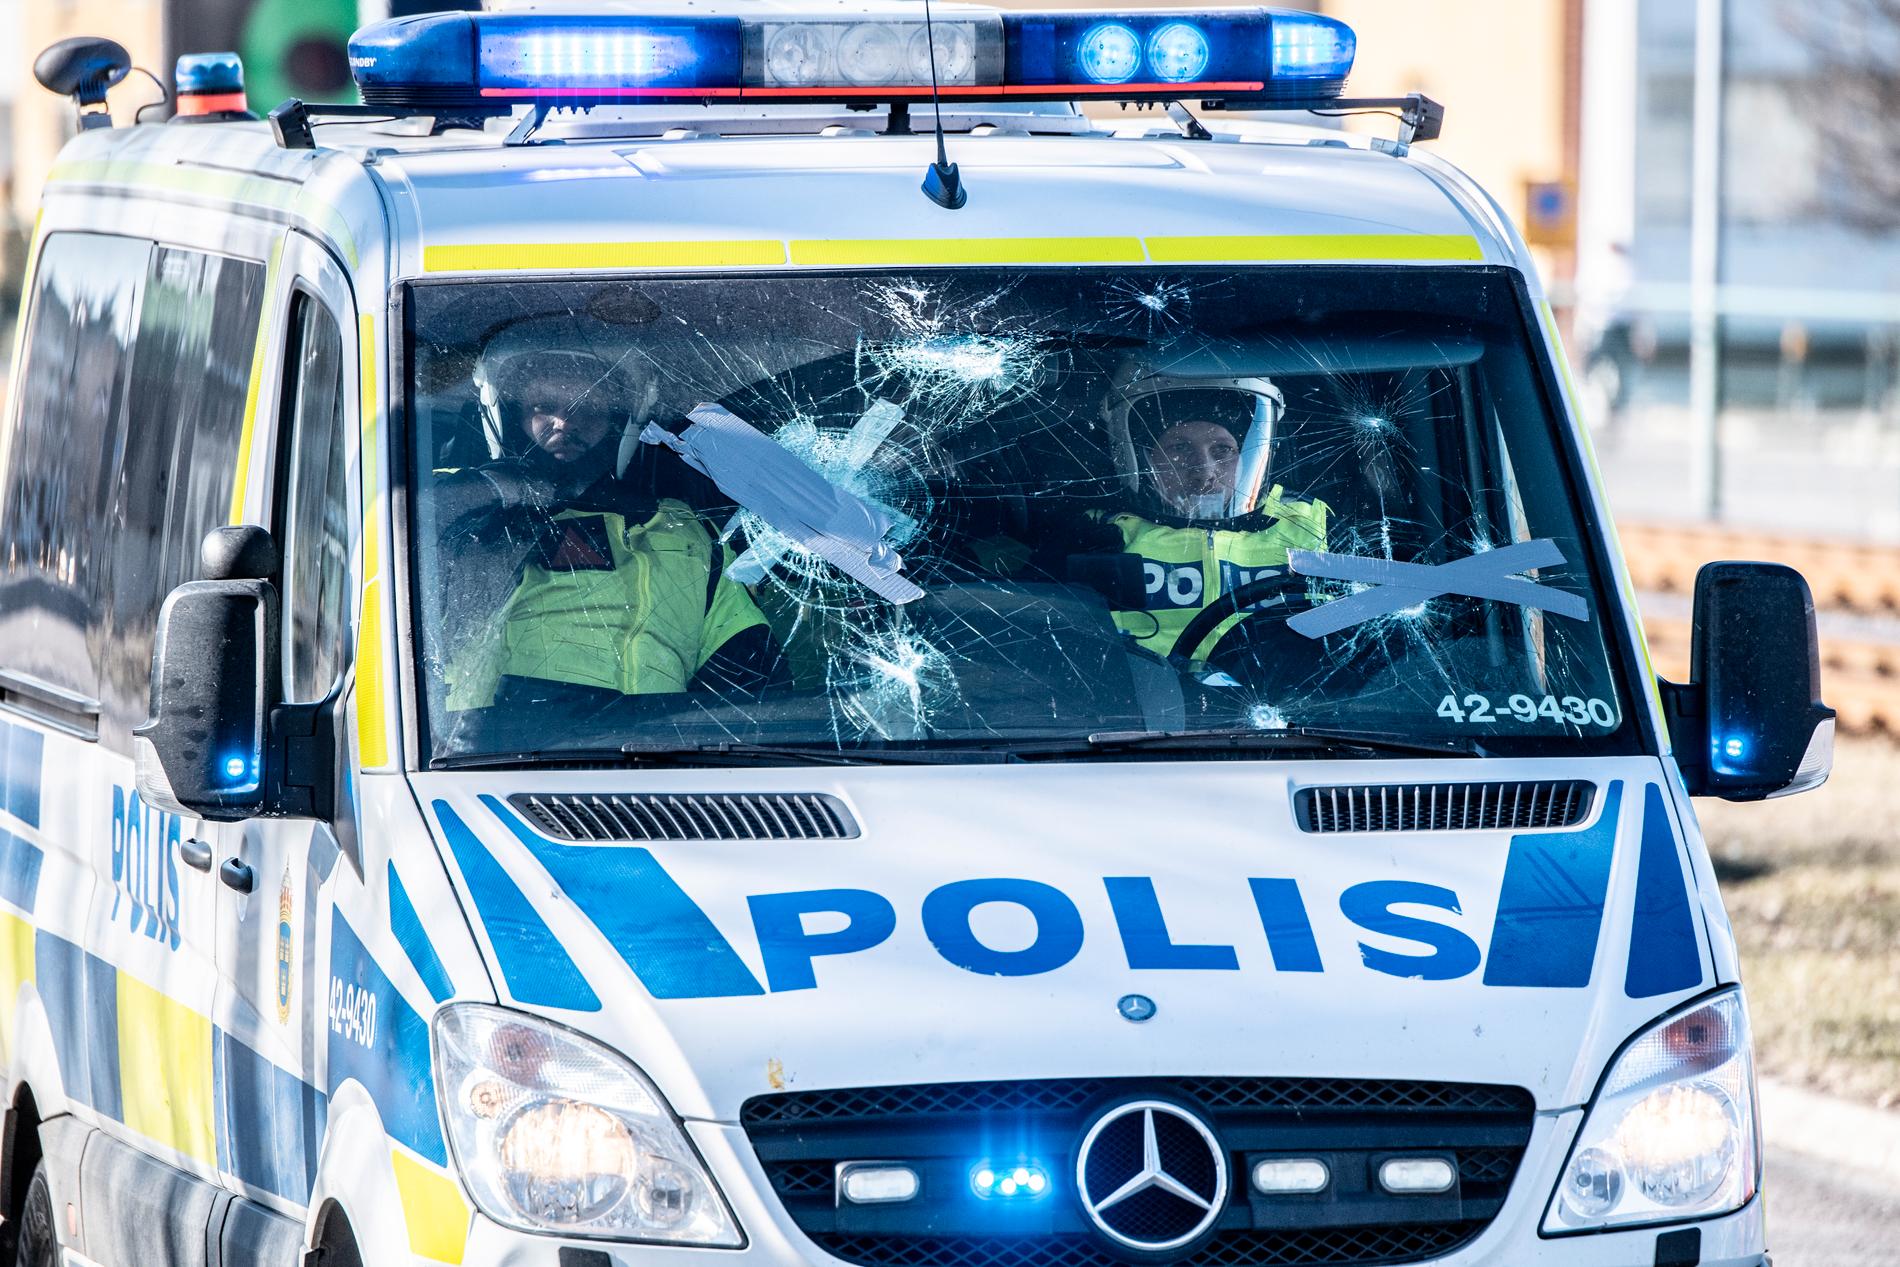 Polisbil attackerad av stenar som kastades under upploppen i Norrköping. 